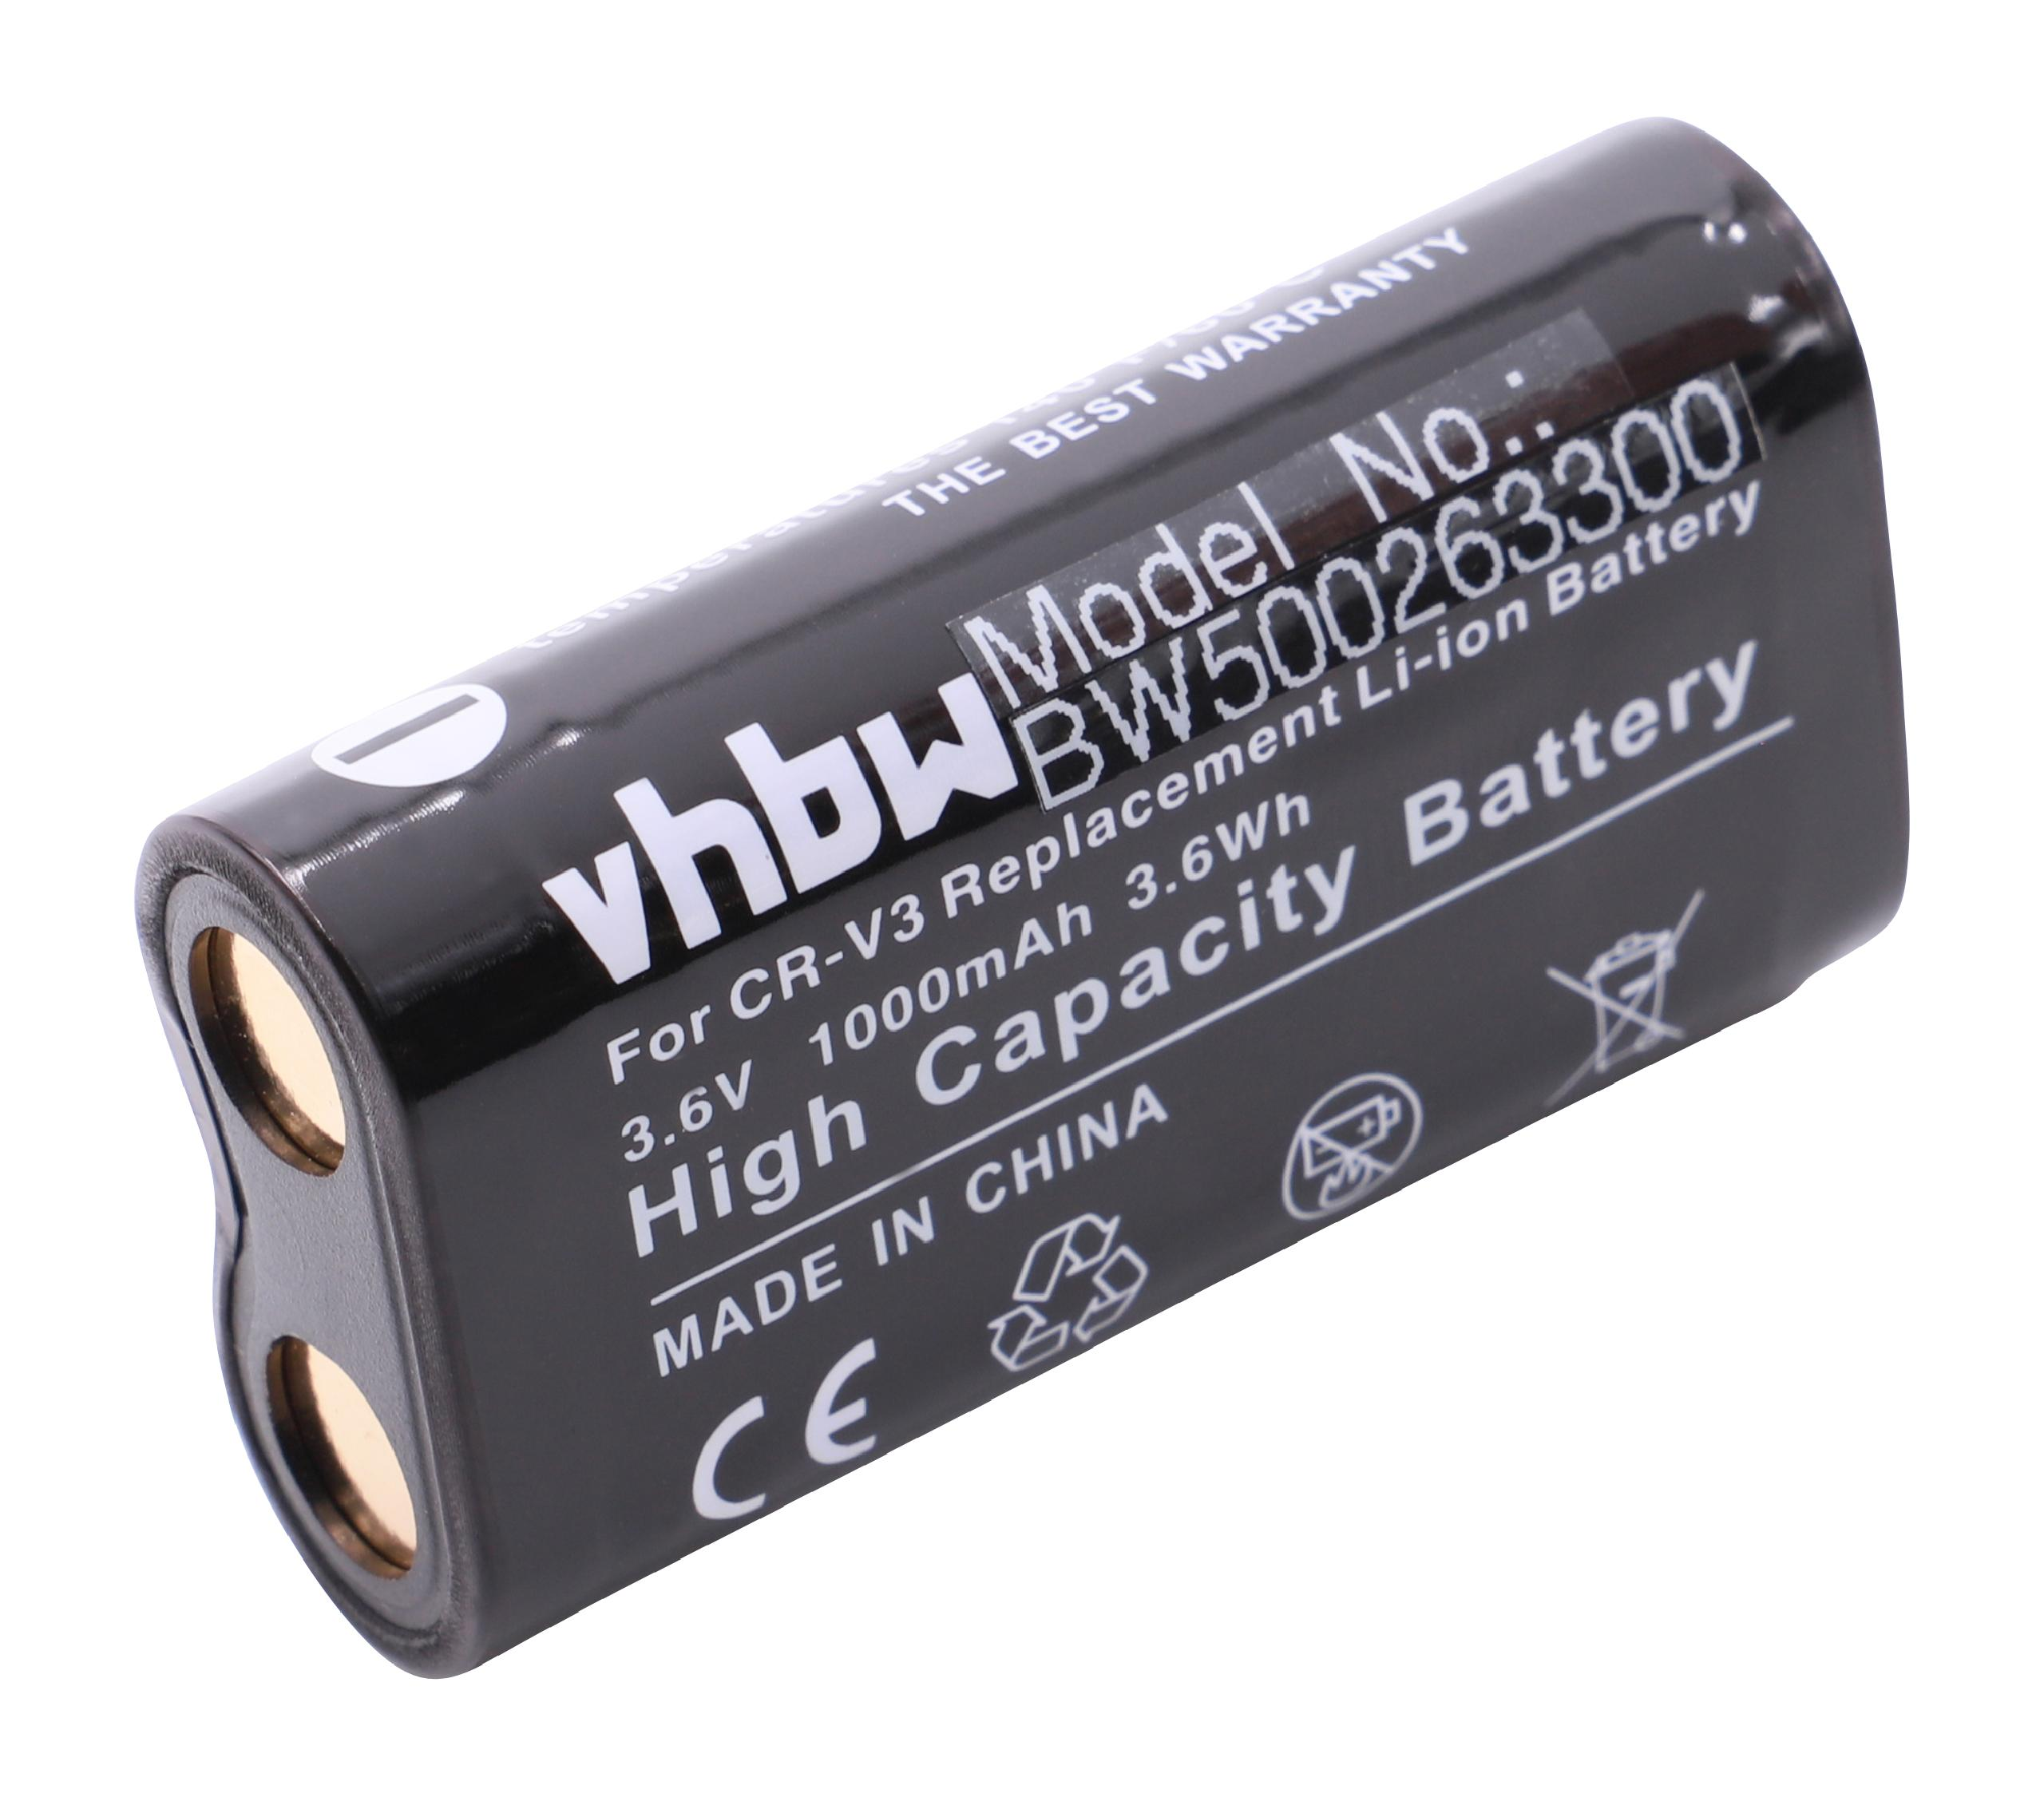 VHBW kompatibel mit 1000 Kamera, A55w, Volt, A402, - Akku 3.6 V4, A5, Digimax A50, Samsung V70, GX-1L, GX-1s, A7, Li-Ion A6